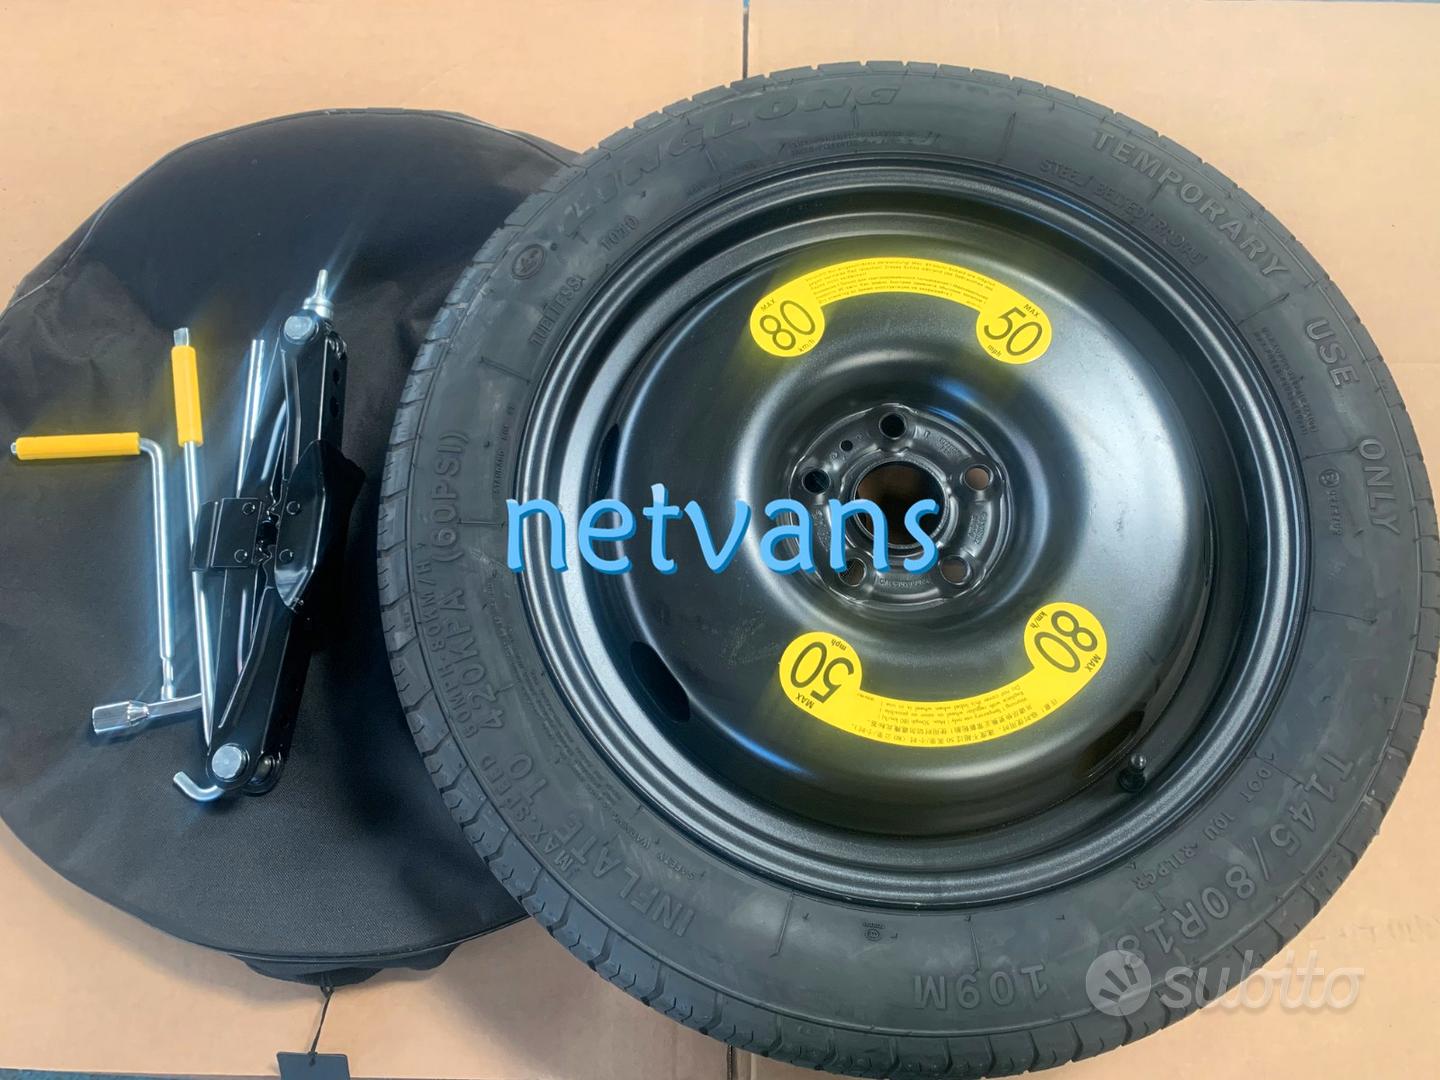 Subito - NETVANS - Kit ruotino di scorta per CAPTUR 2021 da 17 - Accessori  Auto In vendita a Modena